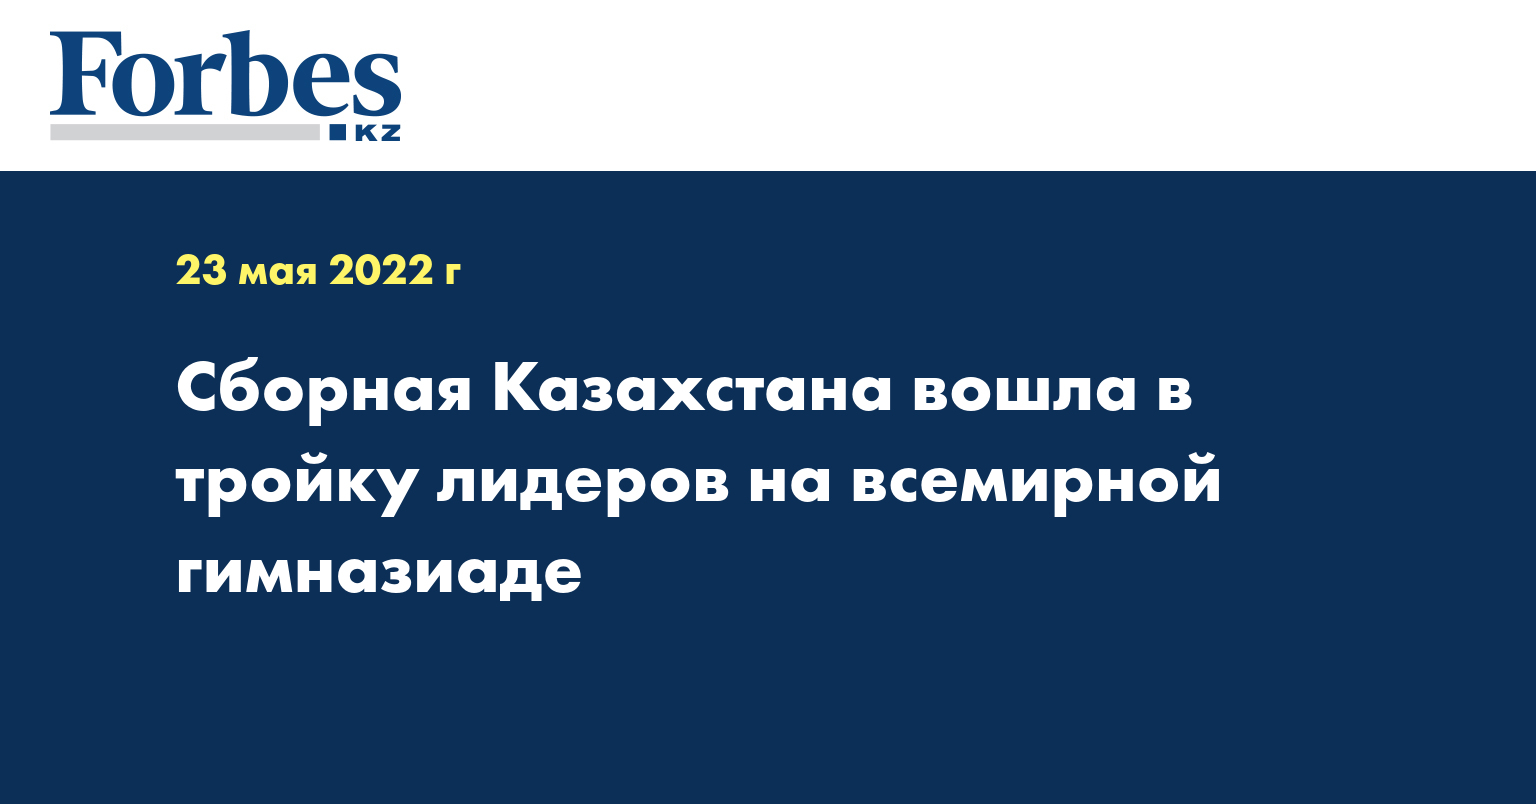 Сборная Казахстана вошла в тройку лидеров на всемирной гимназиаде